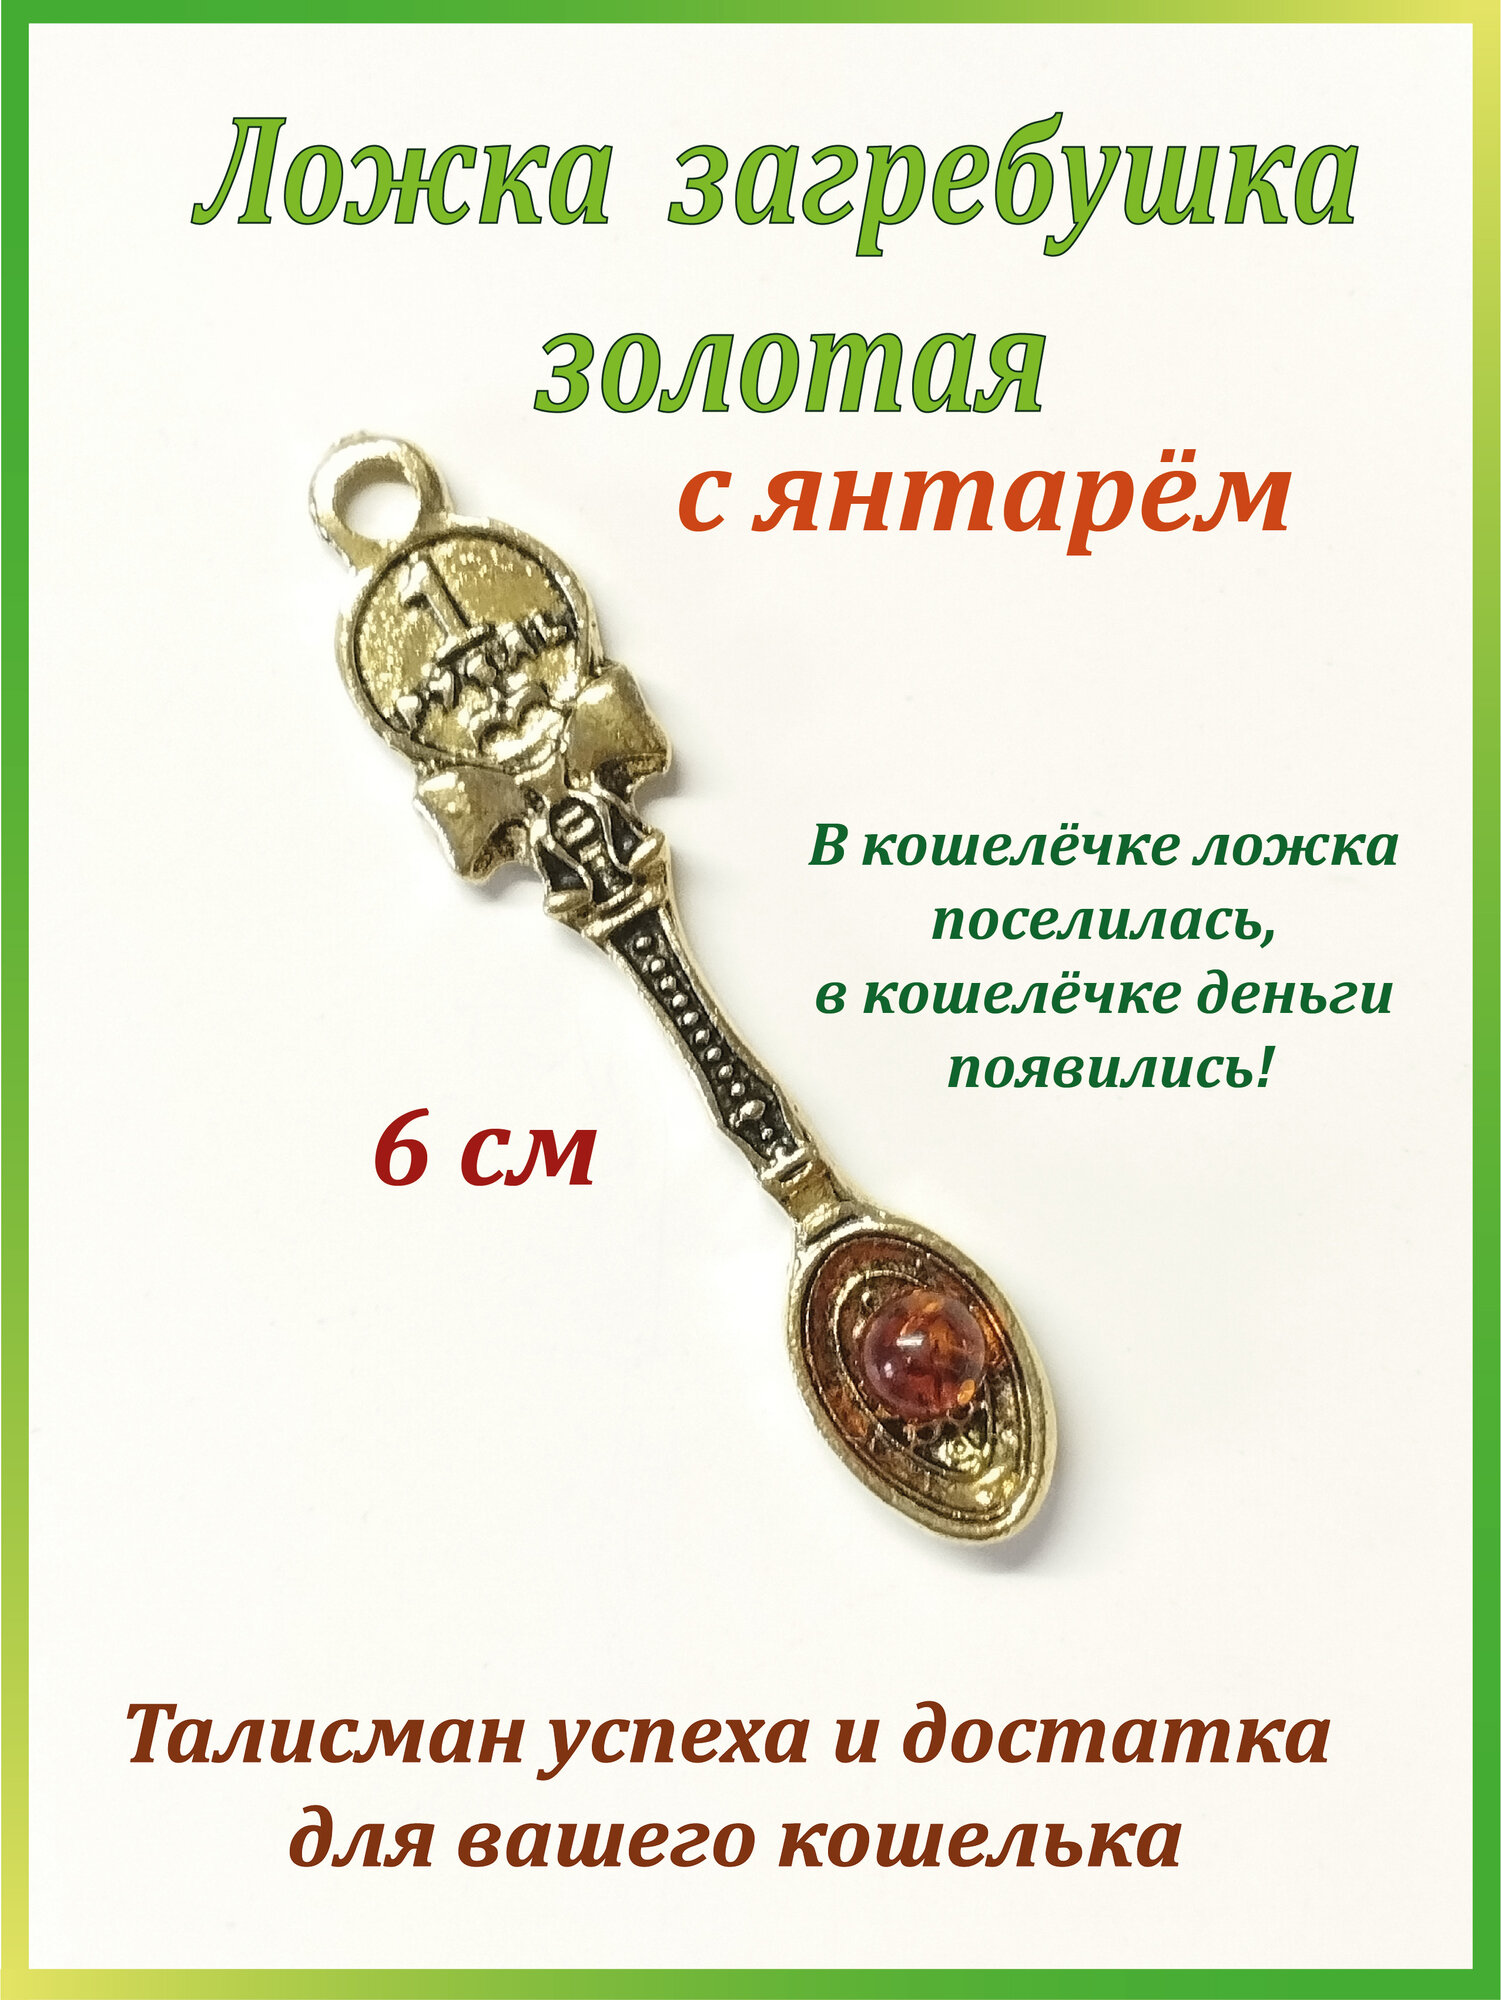 Кошельковый талисман ложка-загребушка с монеткой, с янтарём